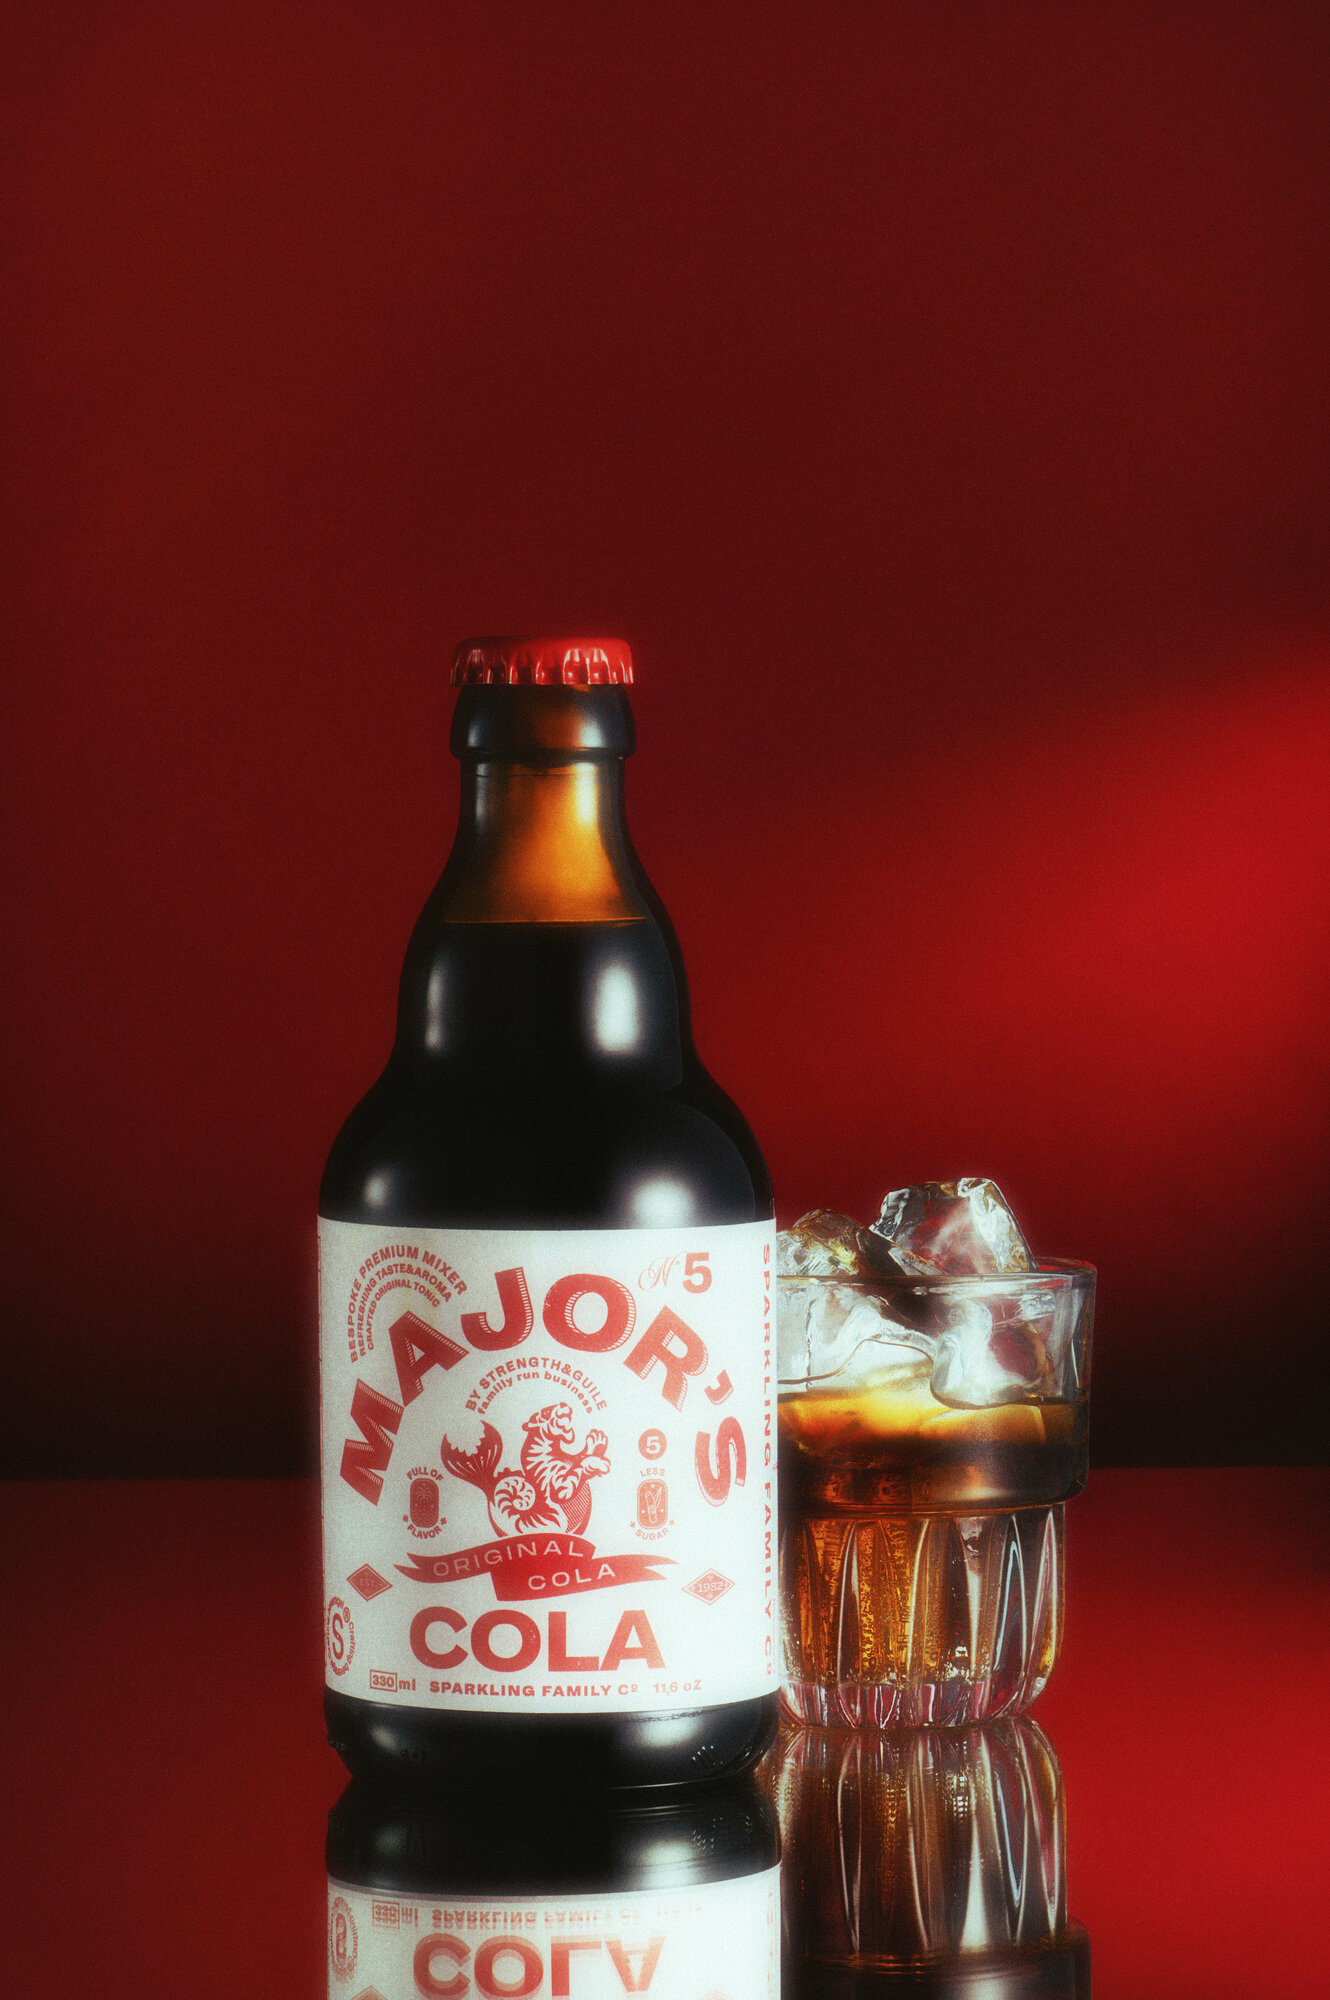 Major’s Original Cola c бобами тонка и бурбонской ванилью - (1 шт. по 0,33 л.)